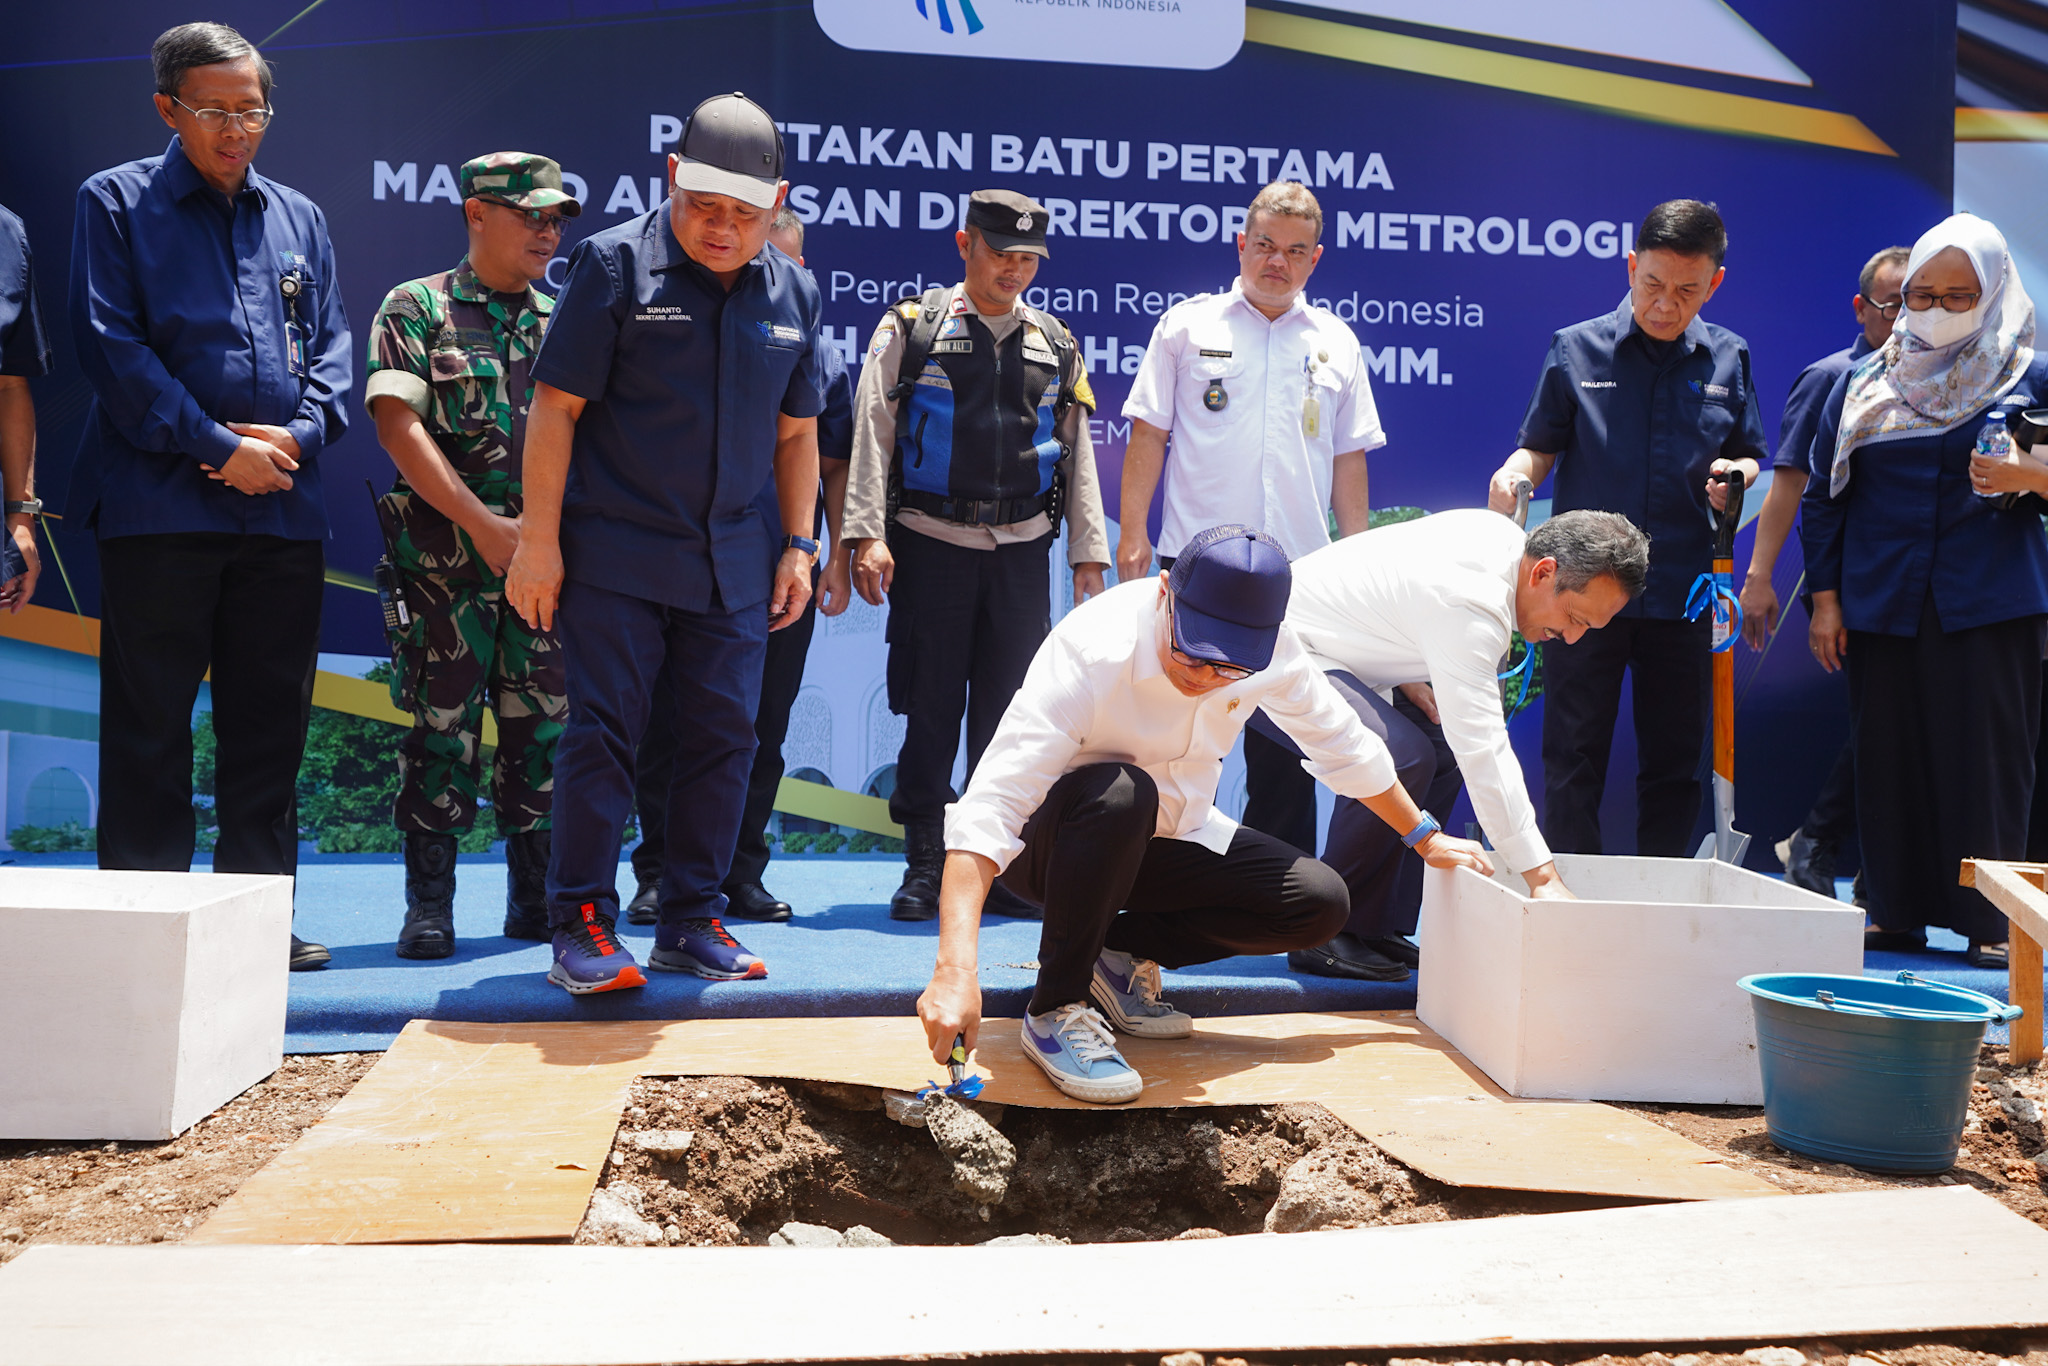 Menteri Perdagangan, Zulkifli Hasan melakukan peletakan batu pertama dalam pembangunan Masjid Al Ihsan di Kantor Direktorat Metrologi, Bandung, Jawa Barat, Rabu (27 Sep).